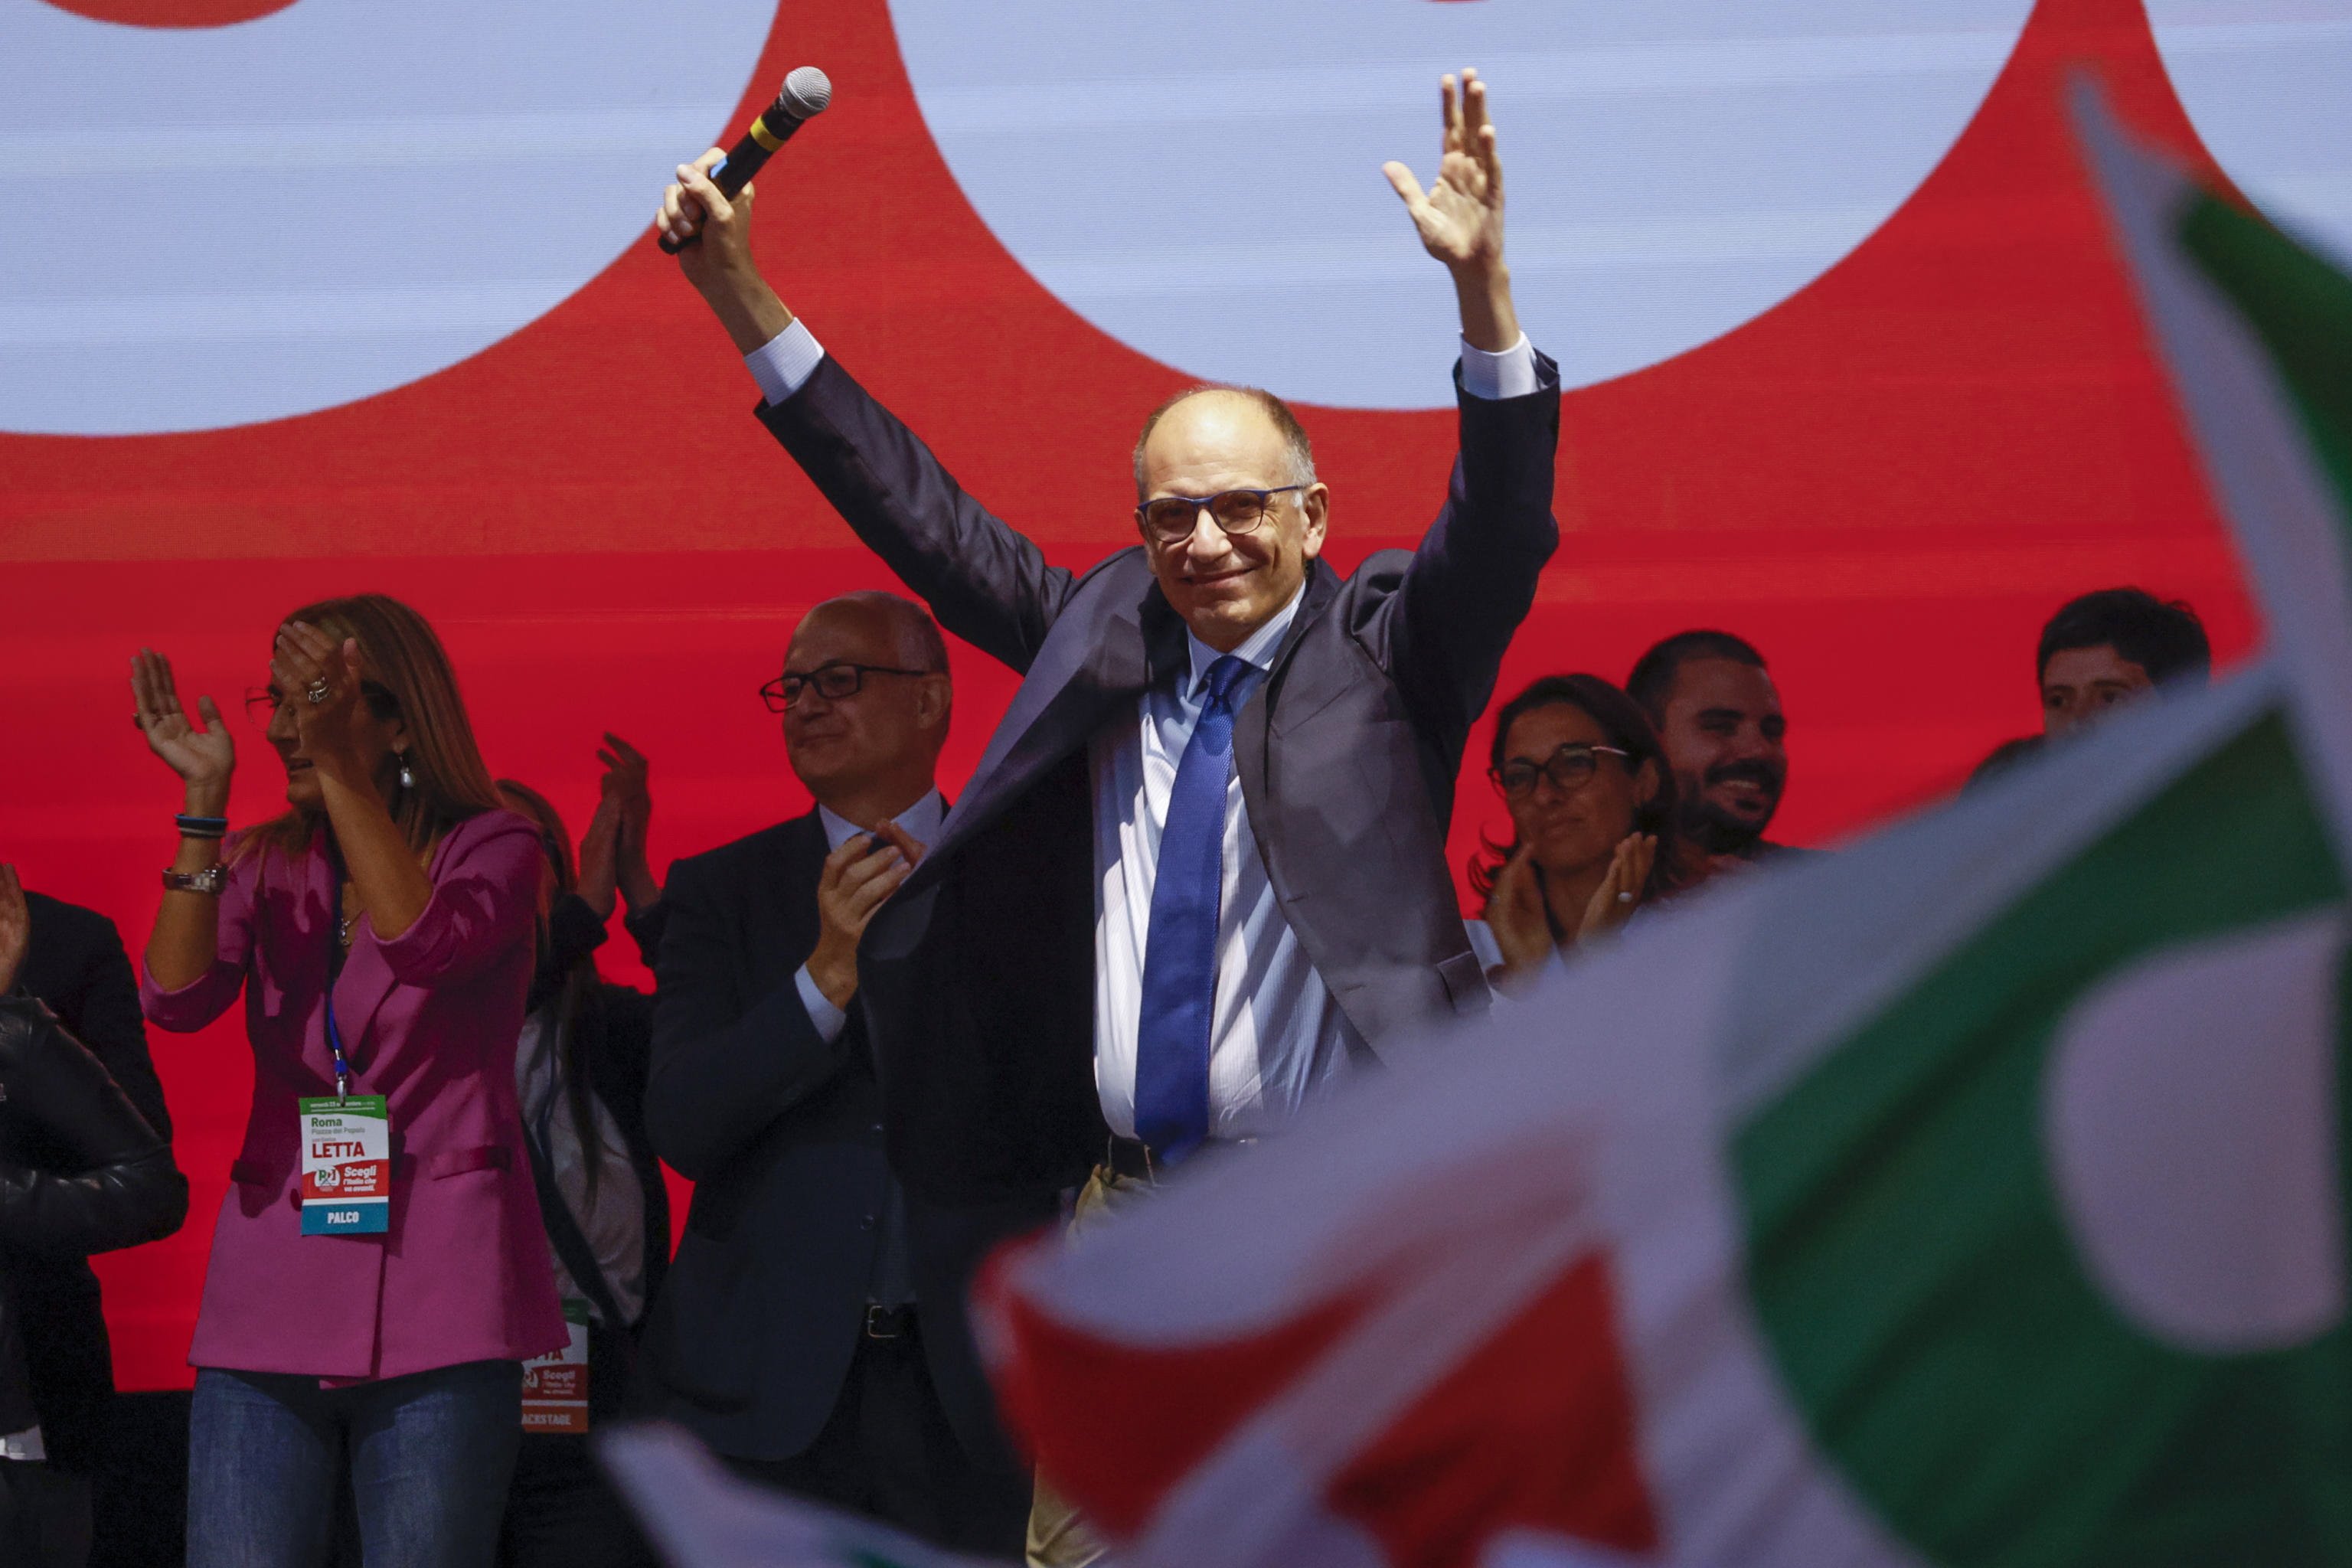 Enrico Letta, el candidat d’esquerres amb l’objectiu de frenar la ultradreta a les eleccions d'Itàlia